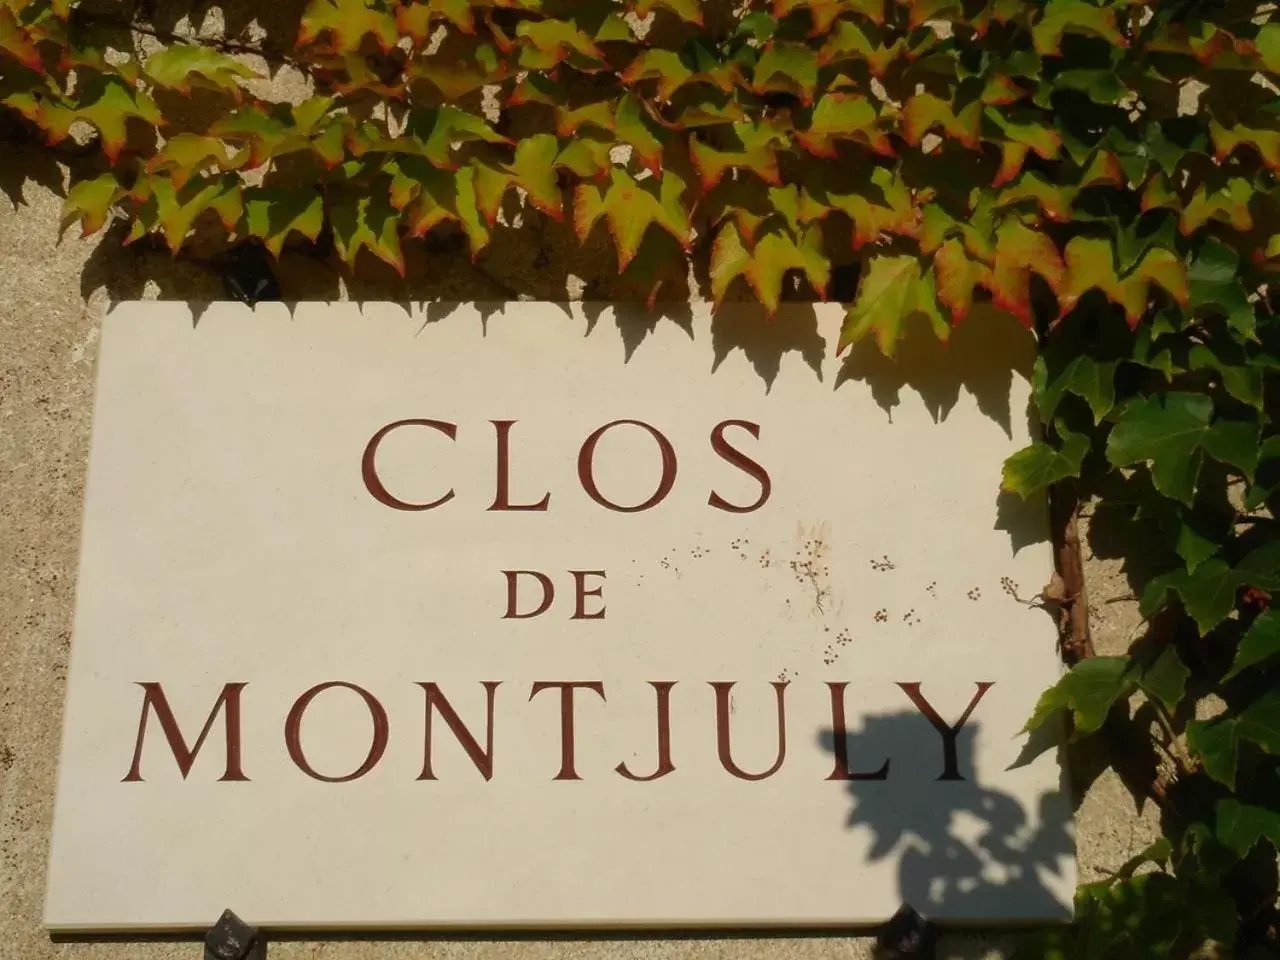 Property building in Clos de Mont July, architecture XVIIIe au cœur de la nature